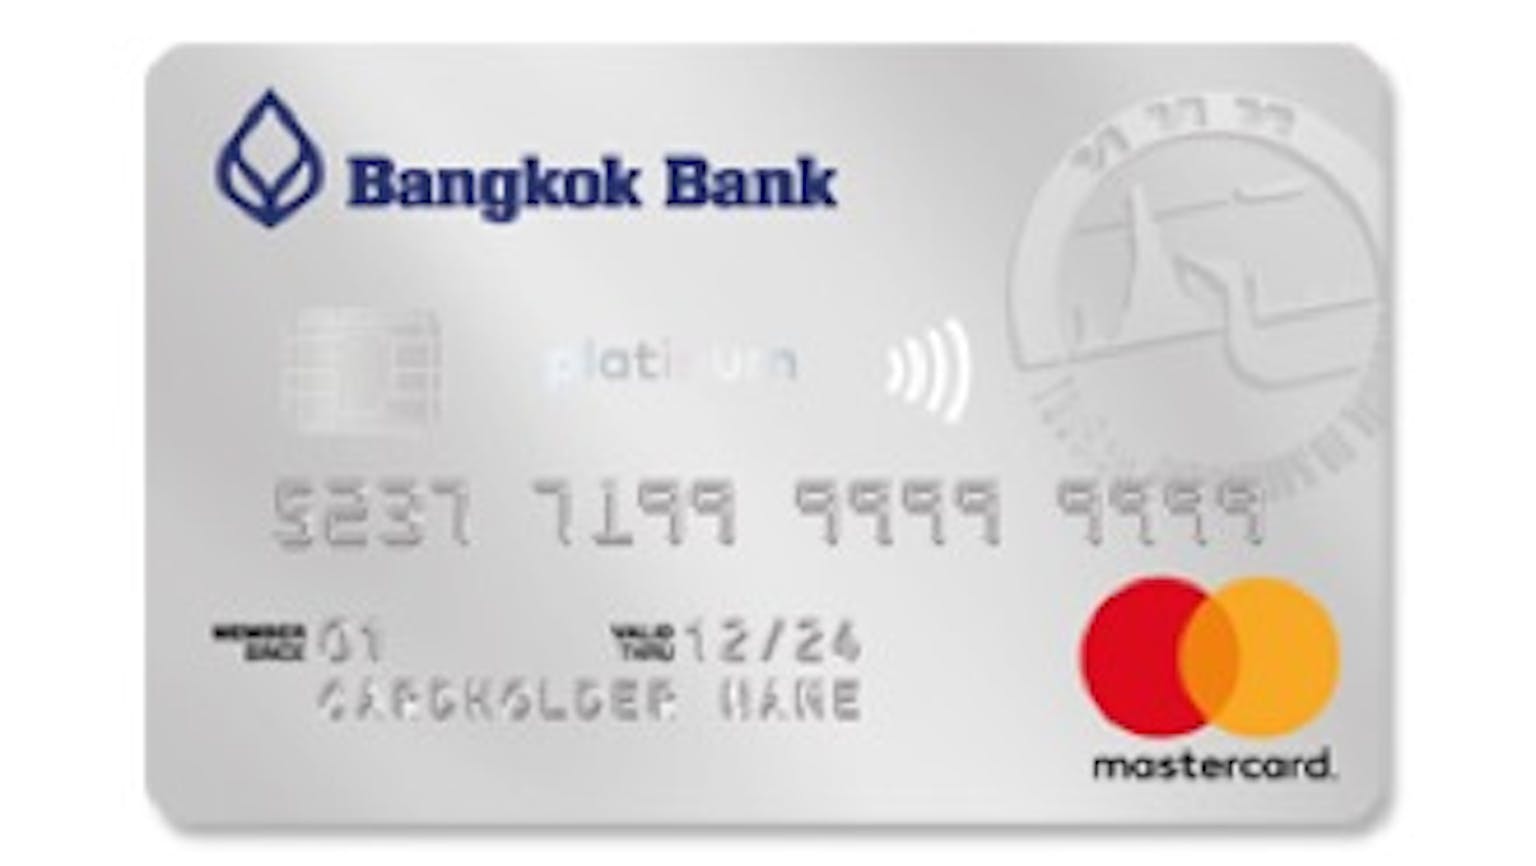 บัตรเครดิตมาสเตอร์การ์ด แพลทินั่ม ท่องเที่ยว ธนาคารกรุงเทพ